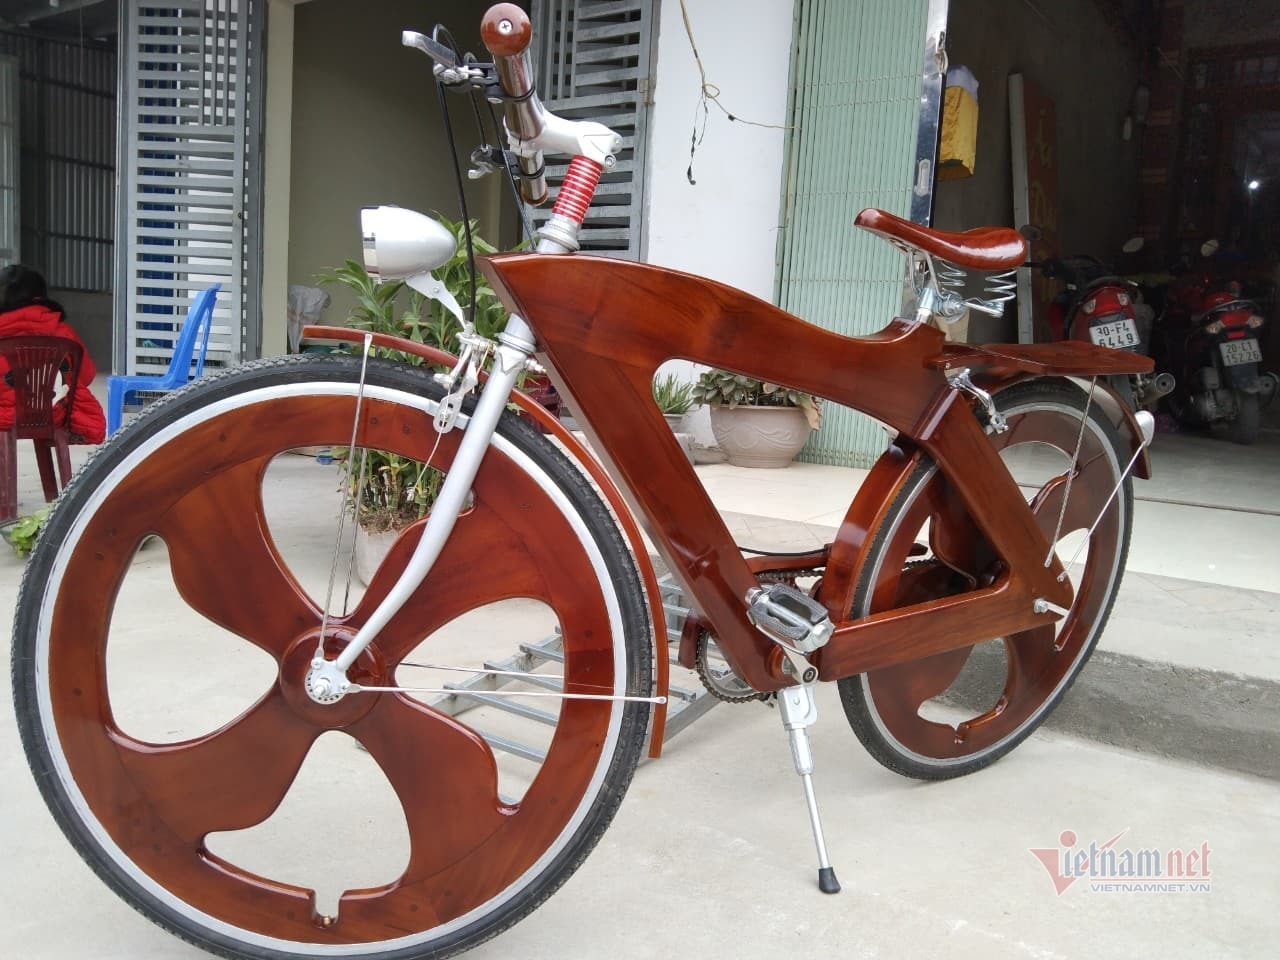 Thợ mộc Thái Nguyên chế xe đạp gỗ 12kg giá 14 triệu đồng